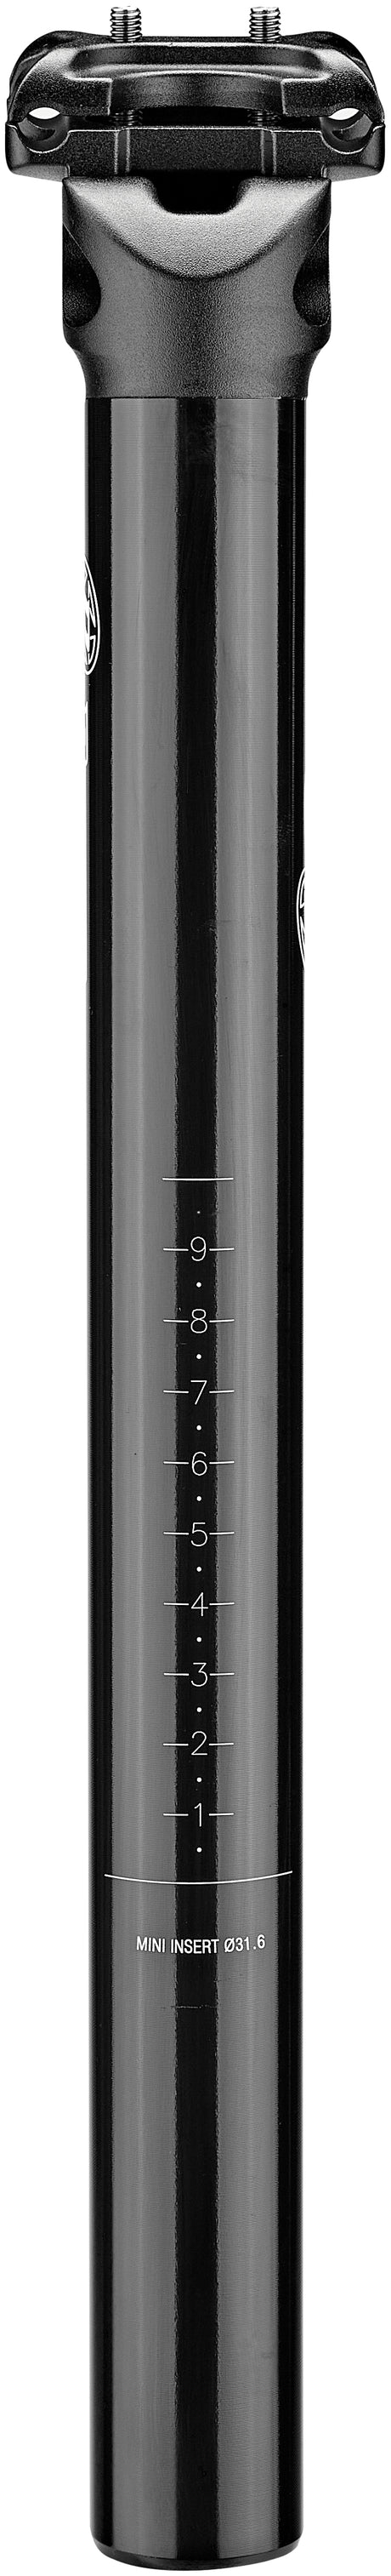 Reverse Comp Sattelstütze Ø31,6mm schwarz